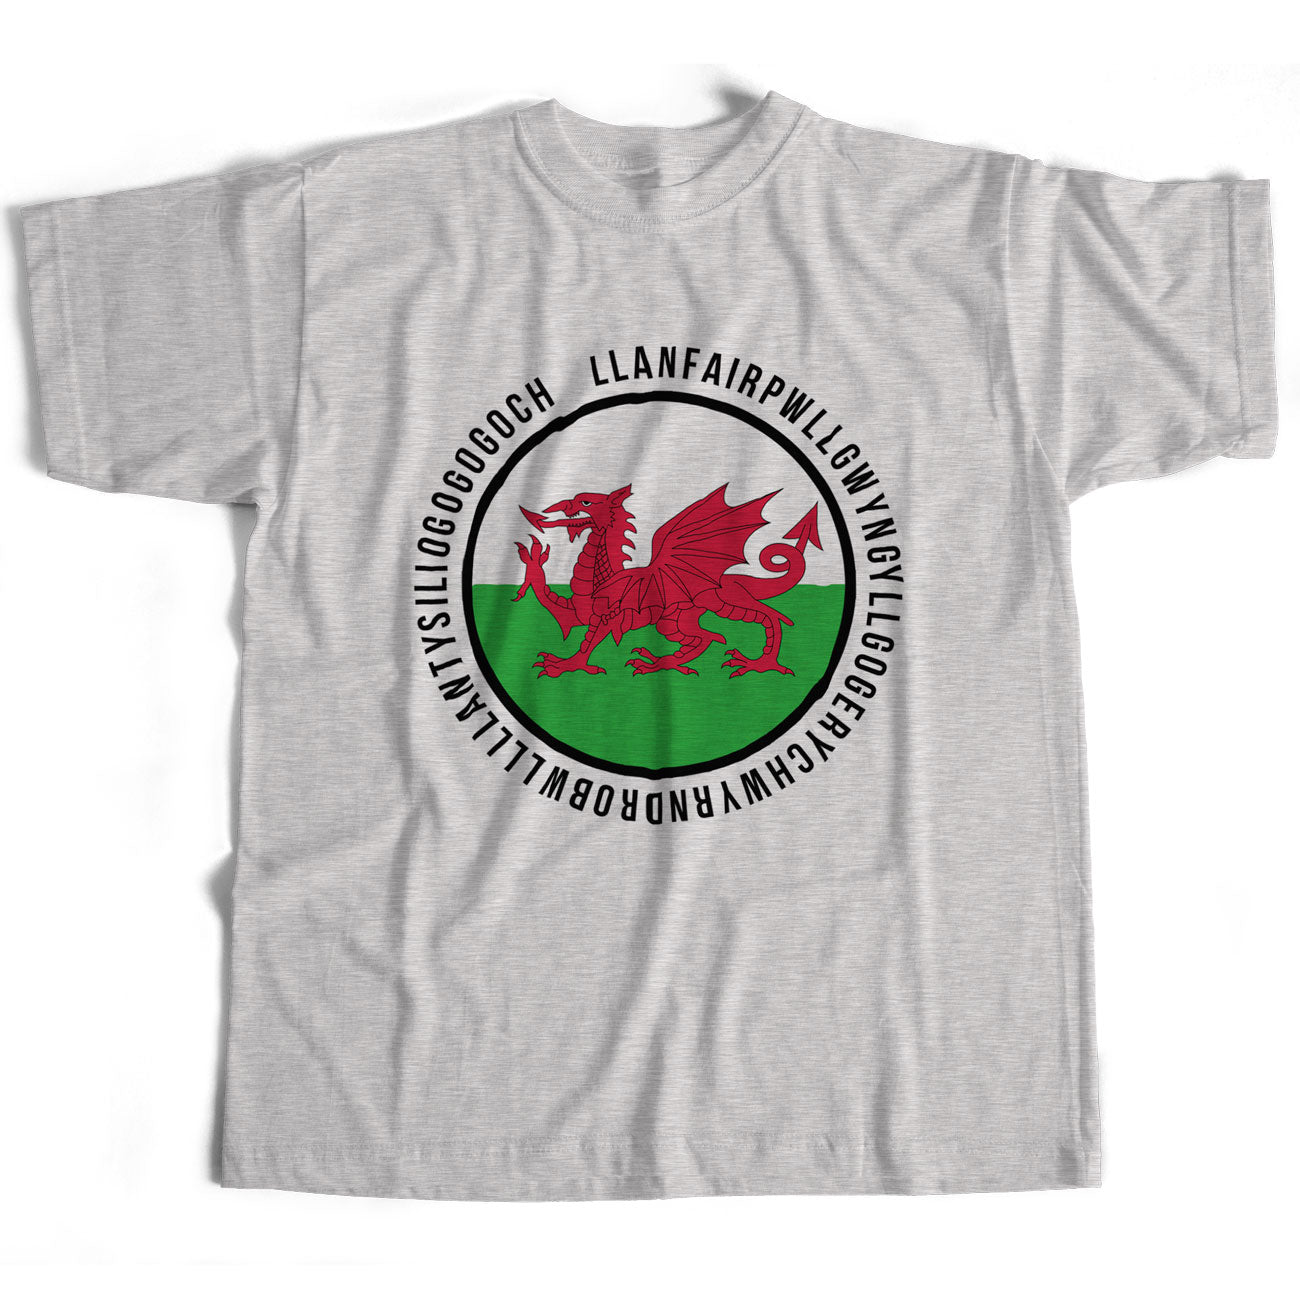 Llanfairpwllgwyngyllgogerychwyrndrobwllllantysiliogogogoch Wales T Shirt